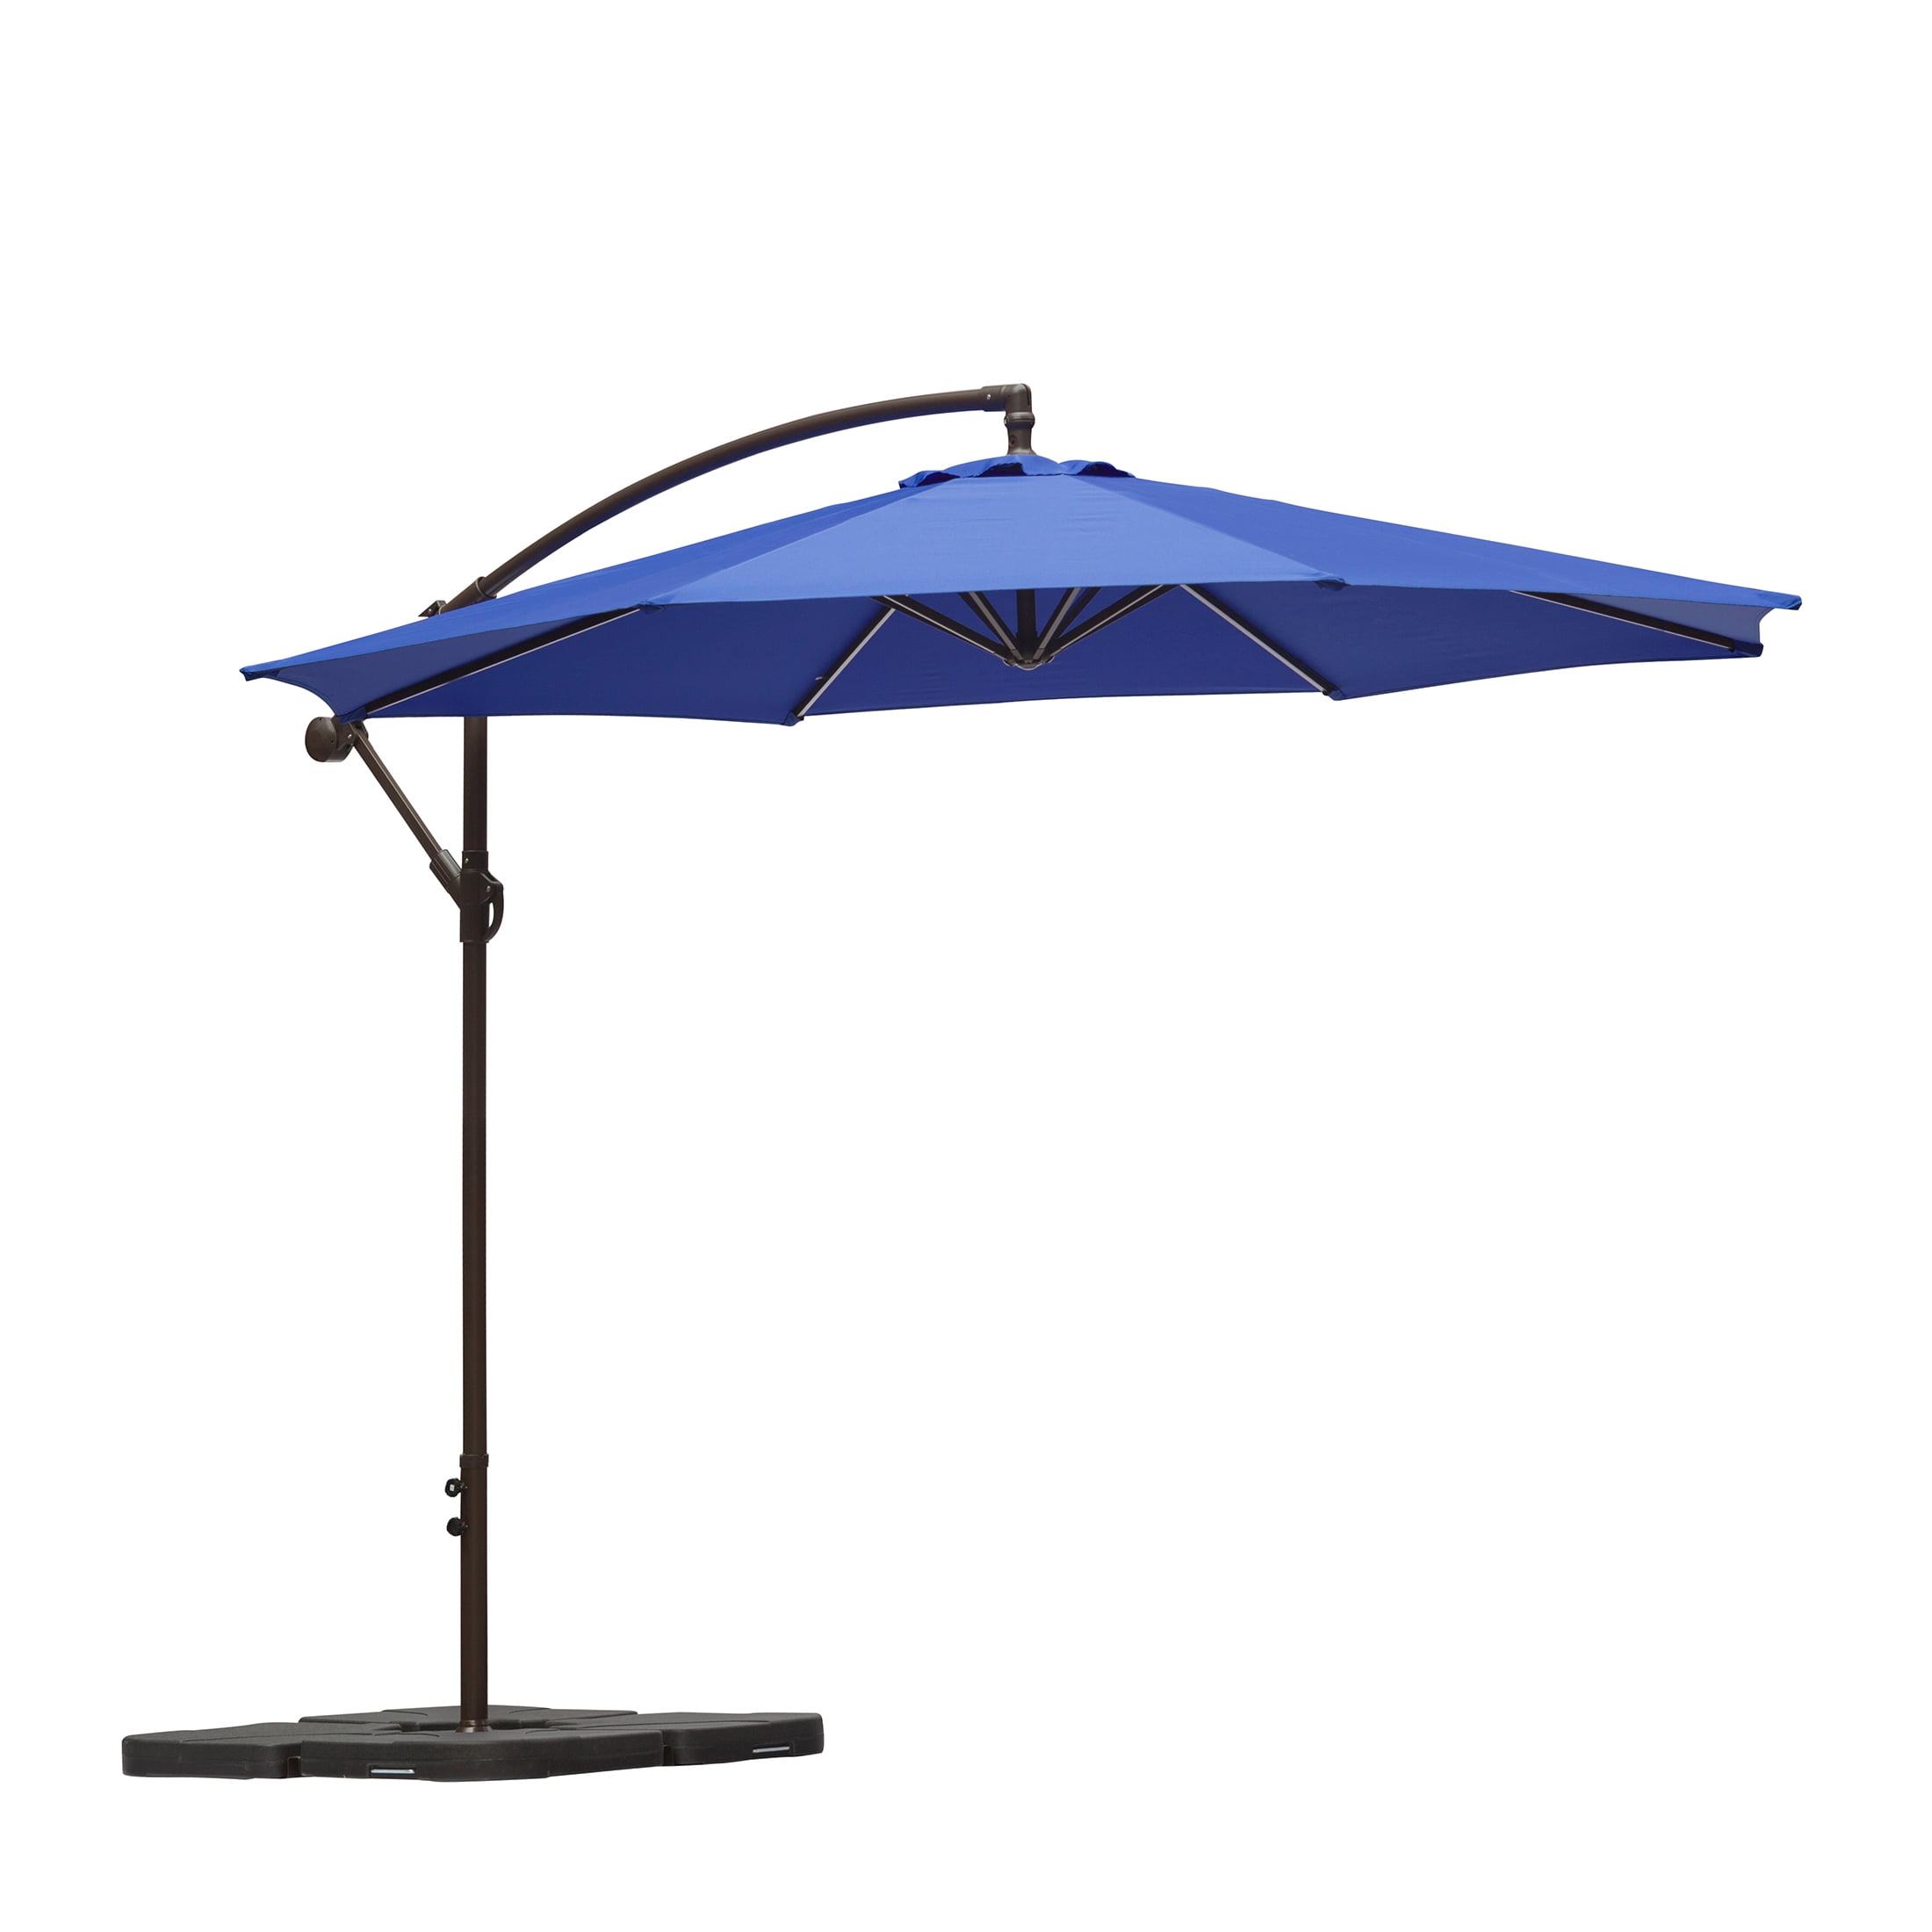 Westlake Long Dual Umbrella Bracket